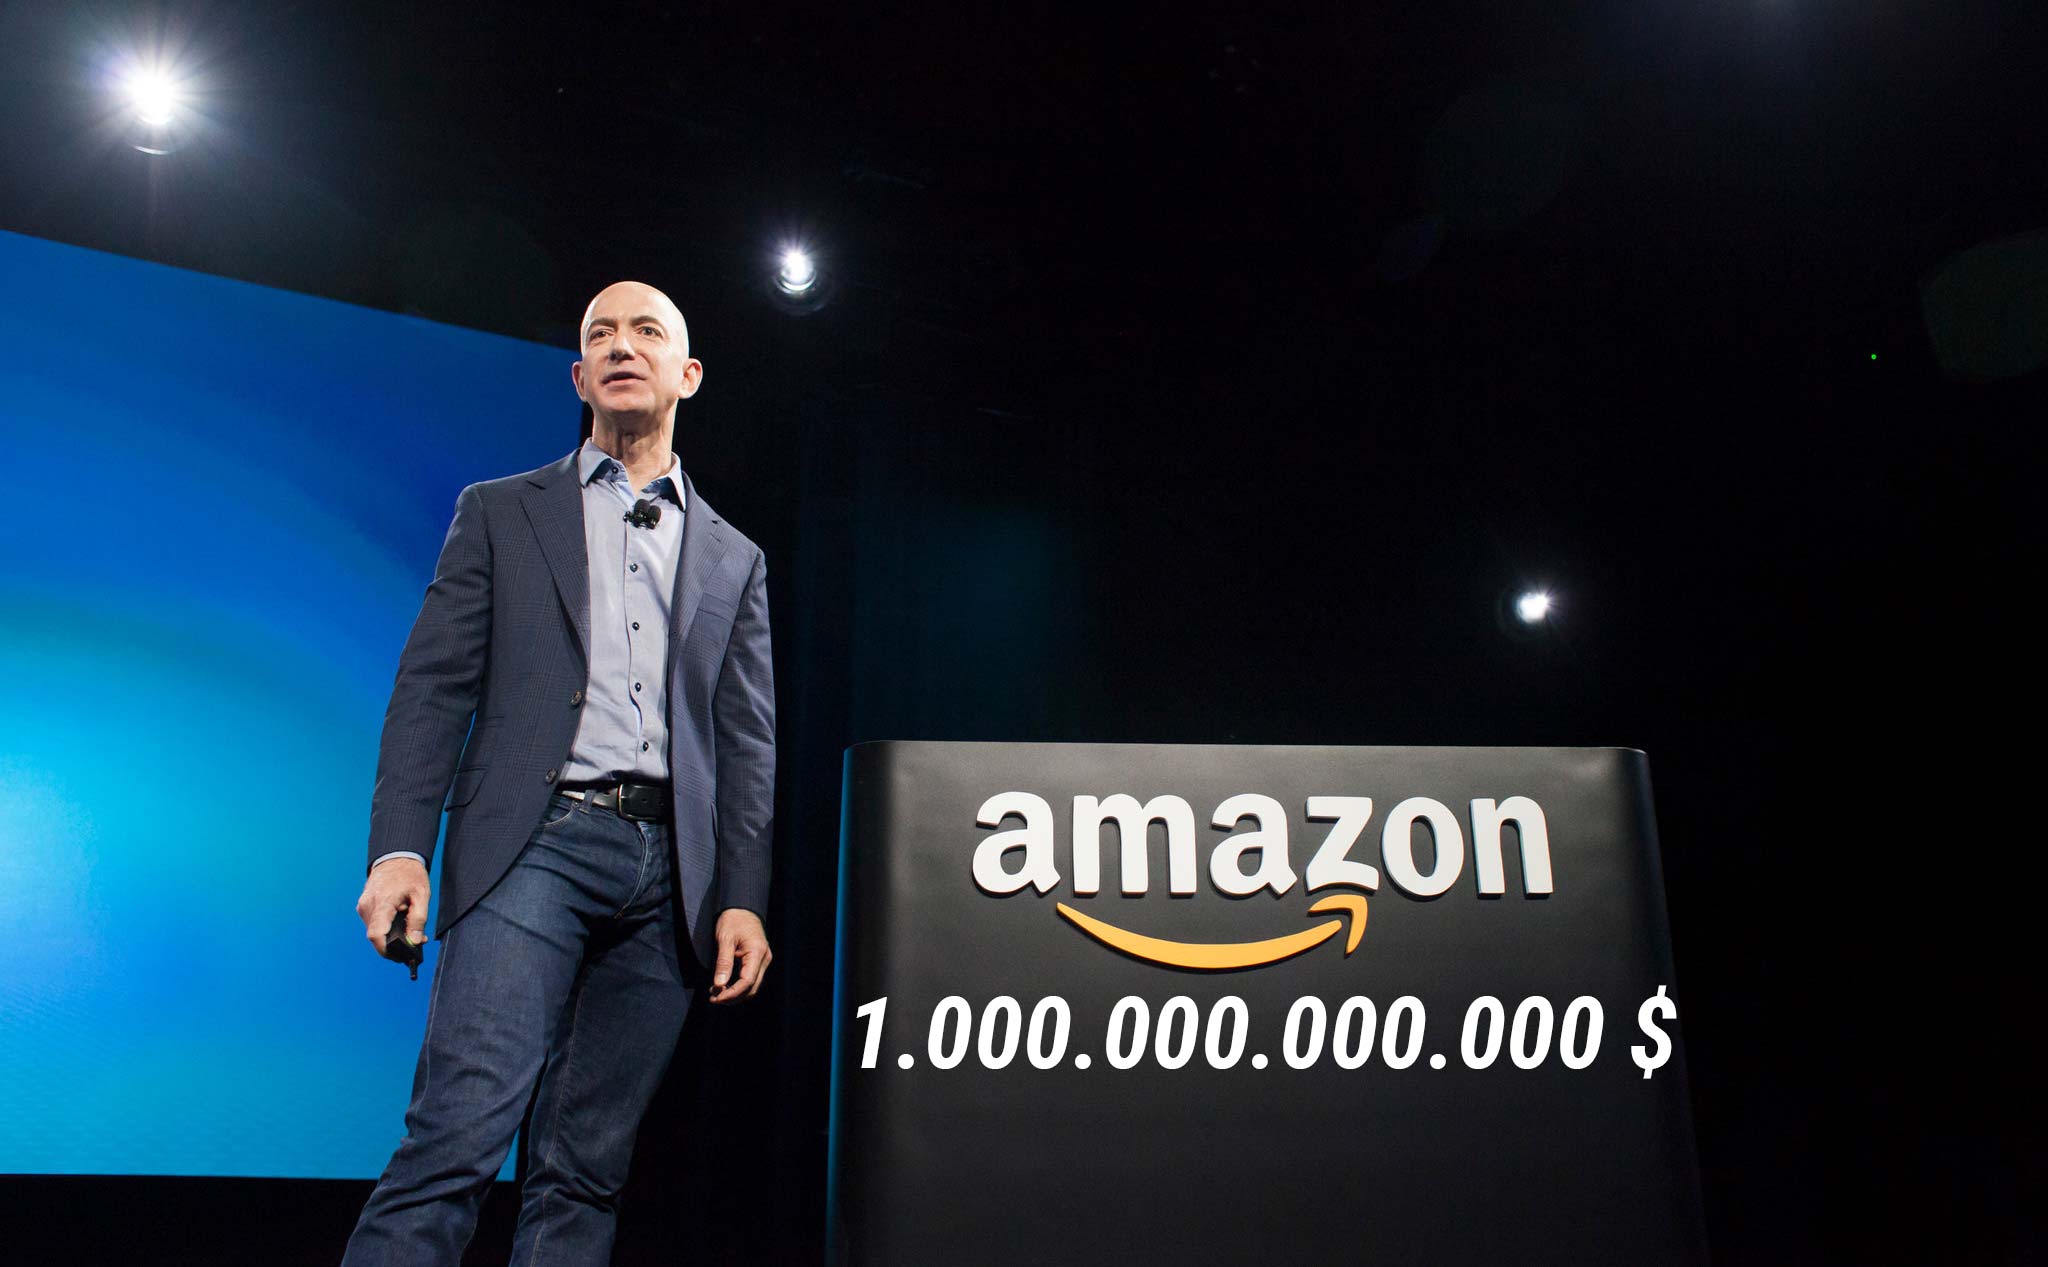 Amazon chính thức trở thành công ty thứ 2 có giá trị 1 ngàn tỷ đô, Apple hiện đang 1,1 ngàn tỷ